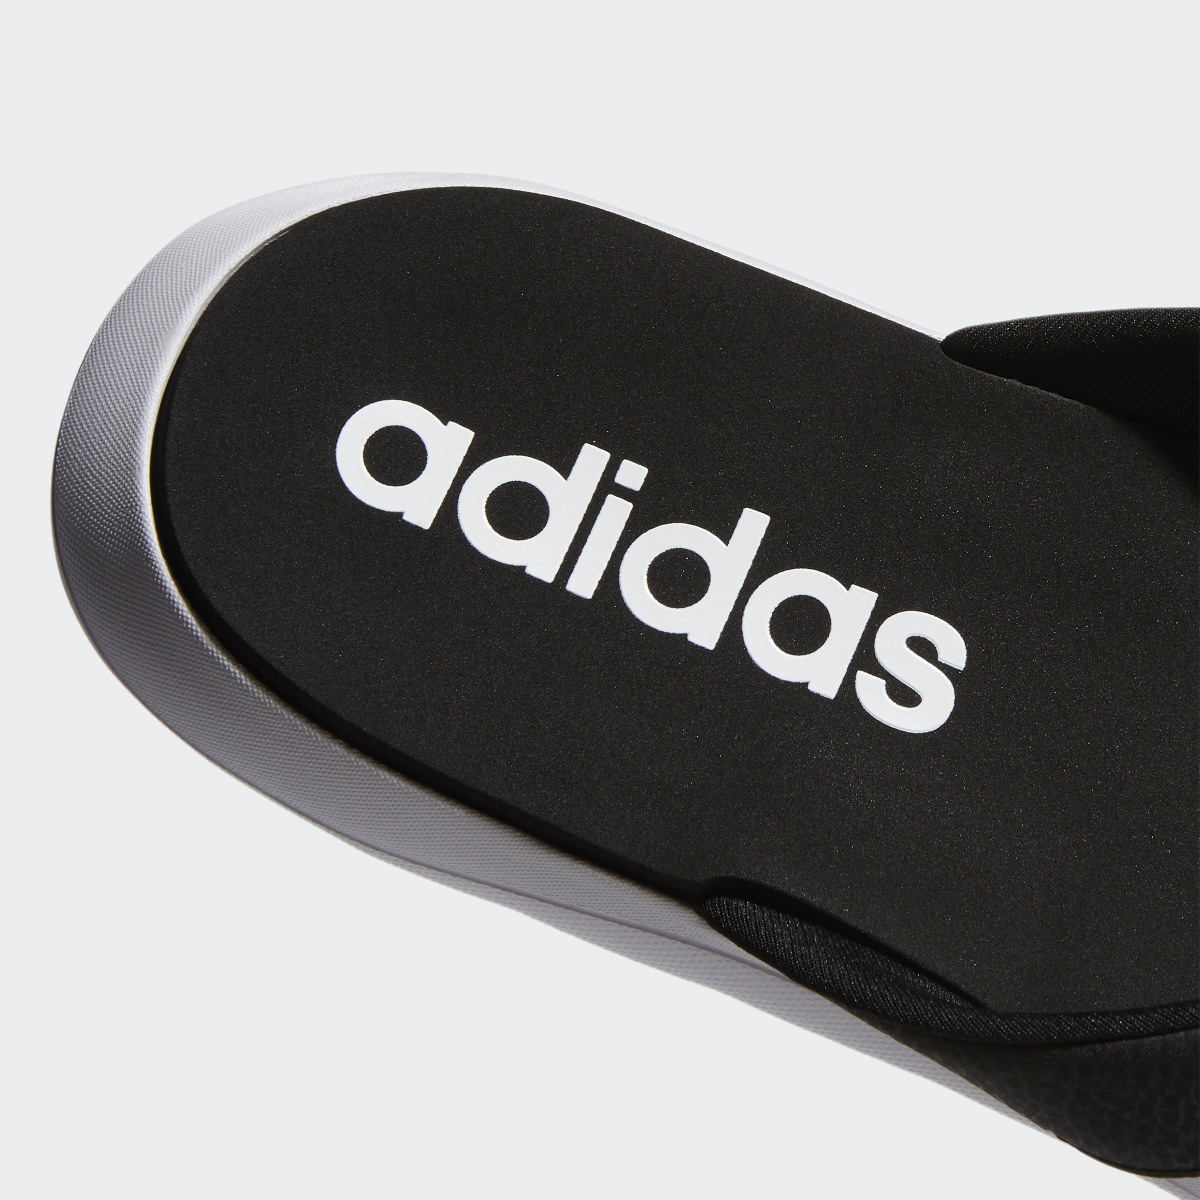 Adidas Comfort Parmak Arası Terlik. 10